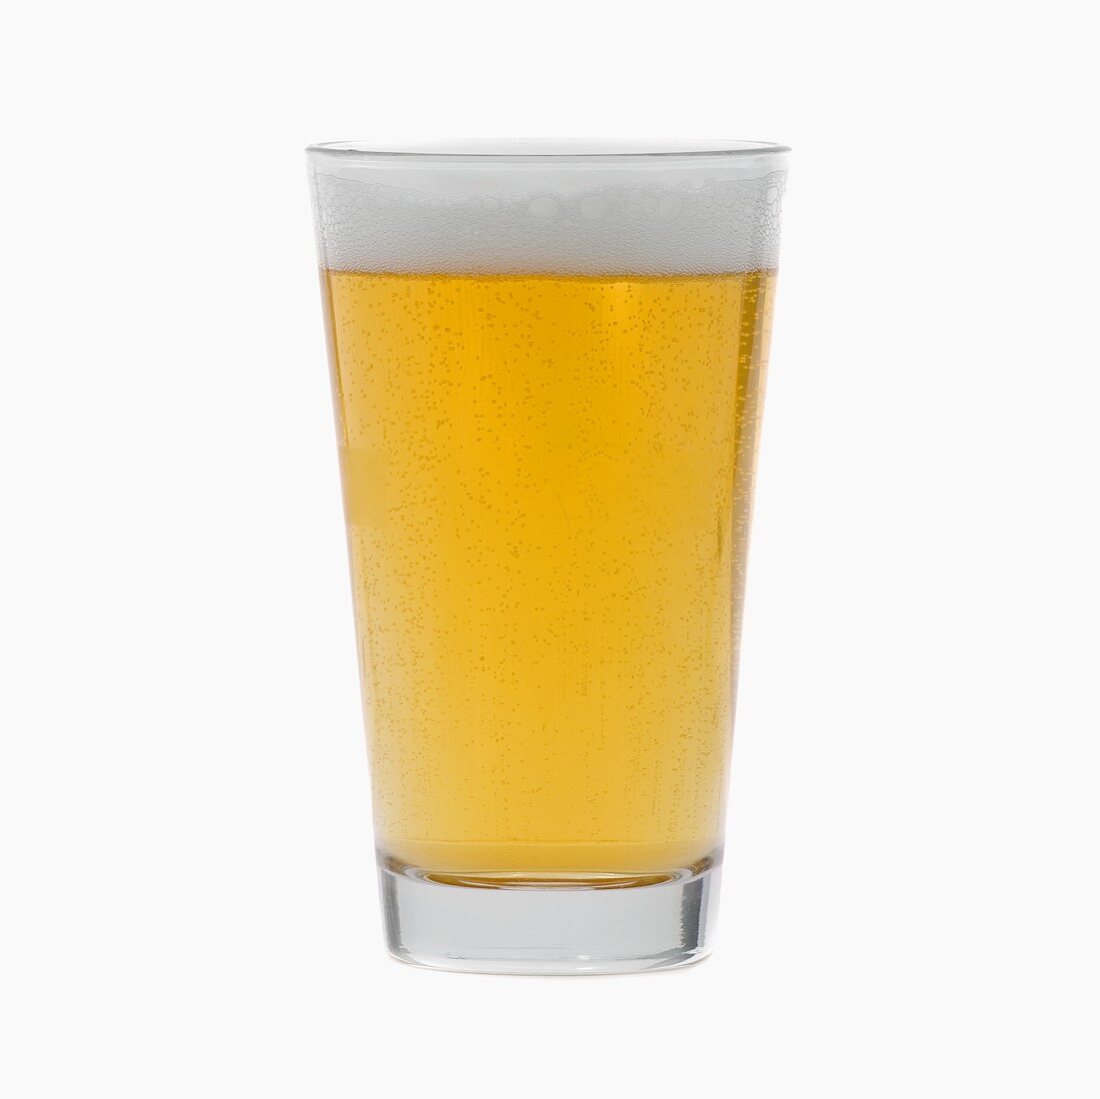 Glas helles Bier